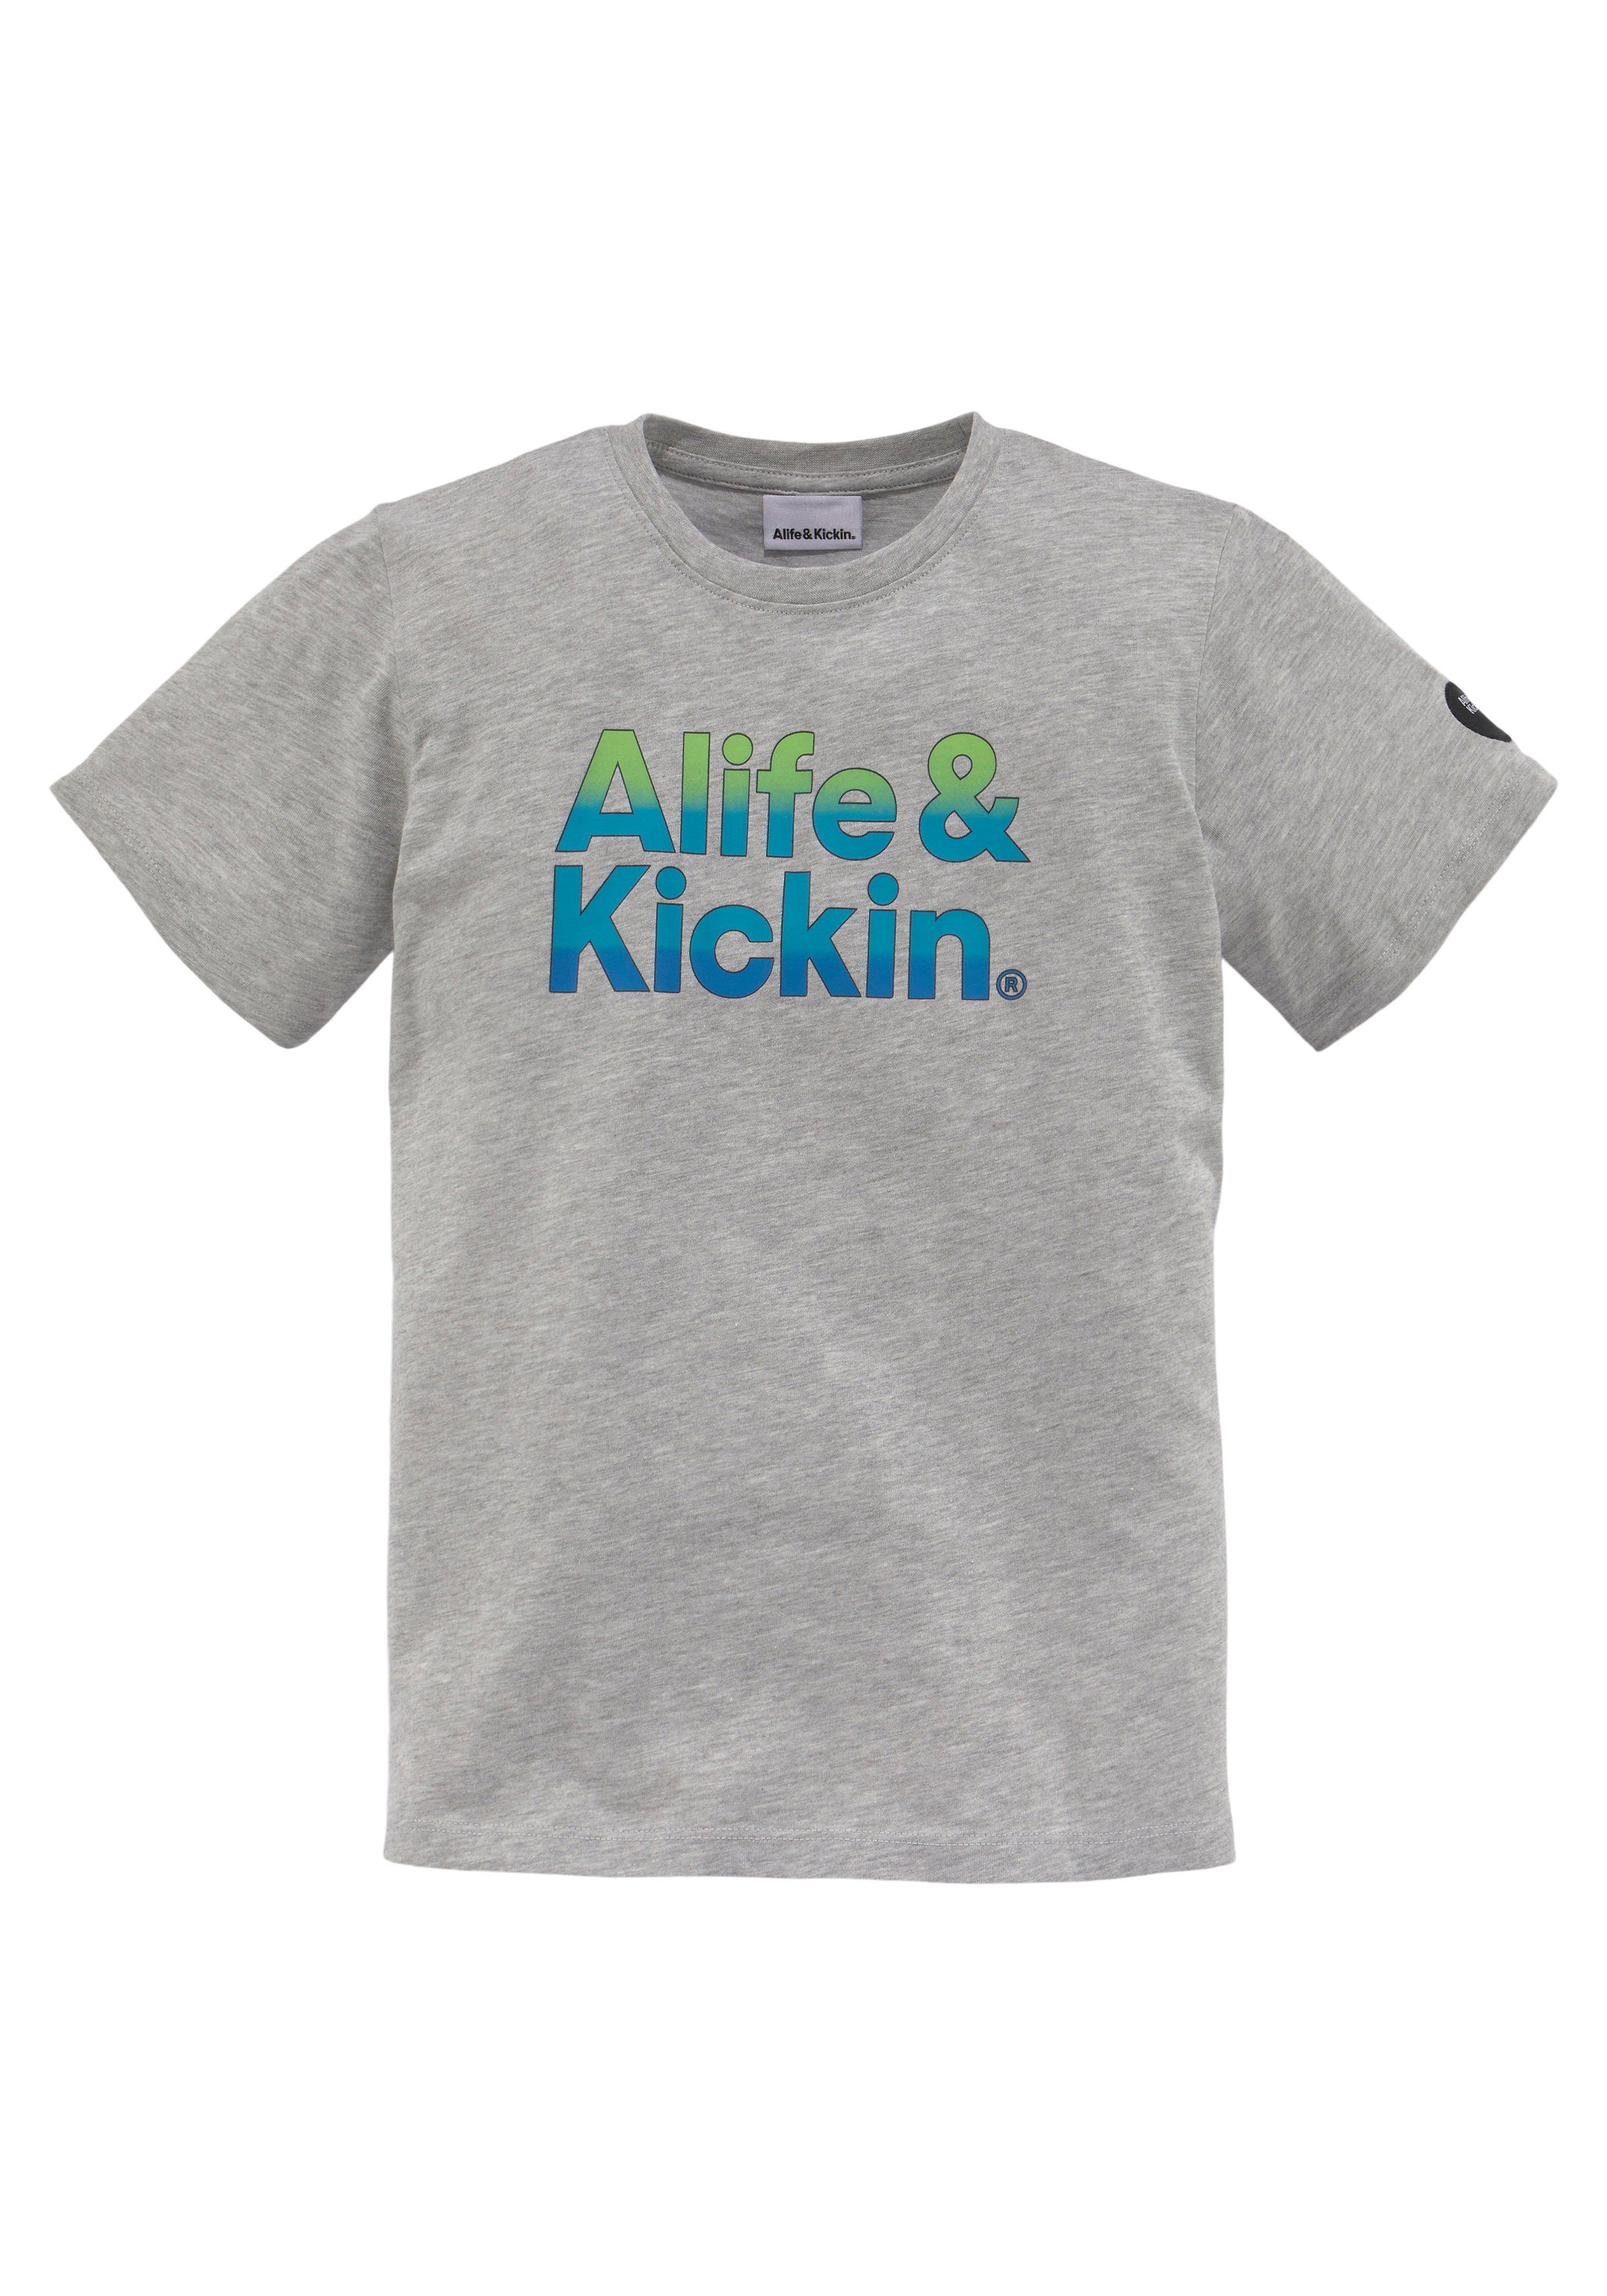 MARKE! Logo-Print melierter Qualität, & Kickin Alife&Kickin NEUE T-Shirt Alife in Kids für